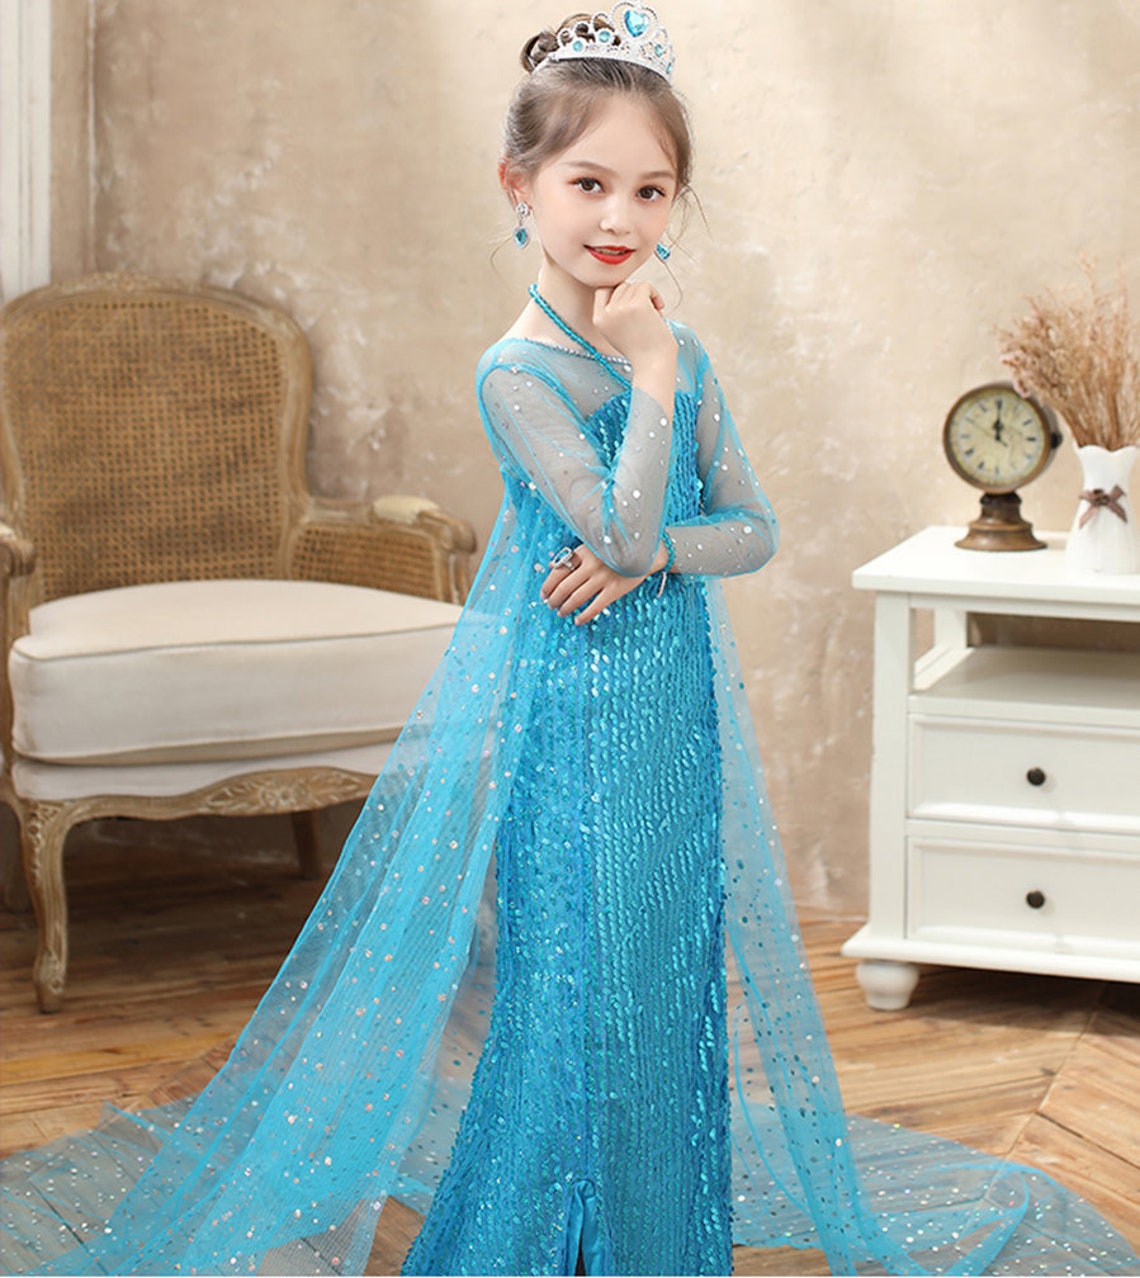 Elsa Dress for Girls Cosplay Toddler Elsa Costume Frozen 2 | Etsy